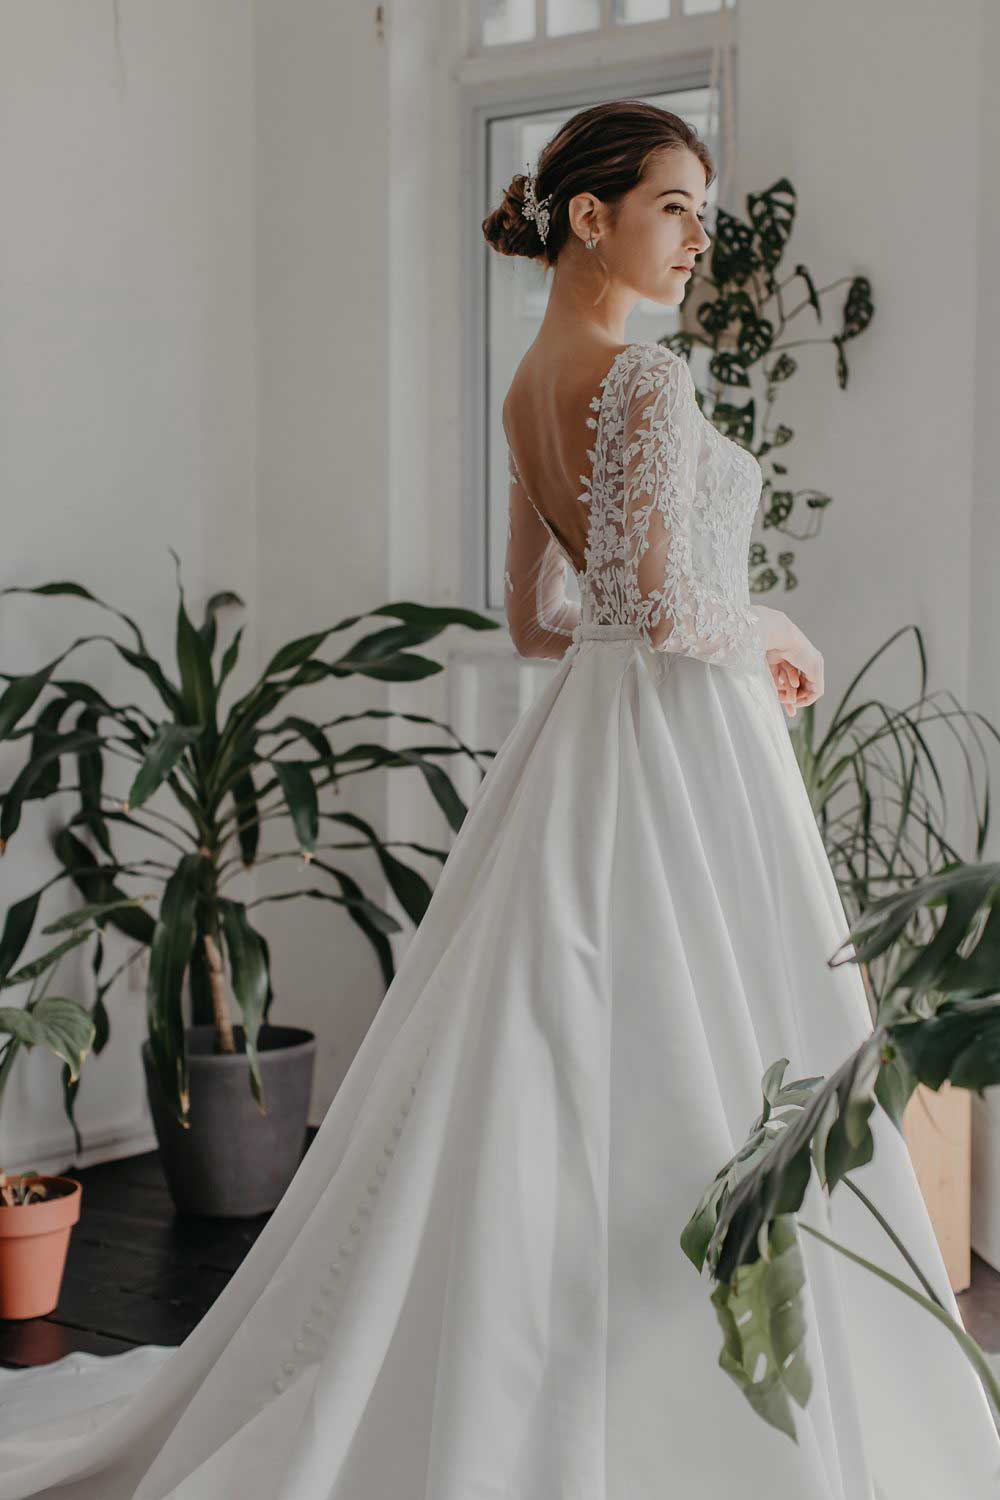 Odelia-wedding-dress-weddingdress-bridalgown-15-e1558005875443_